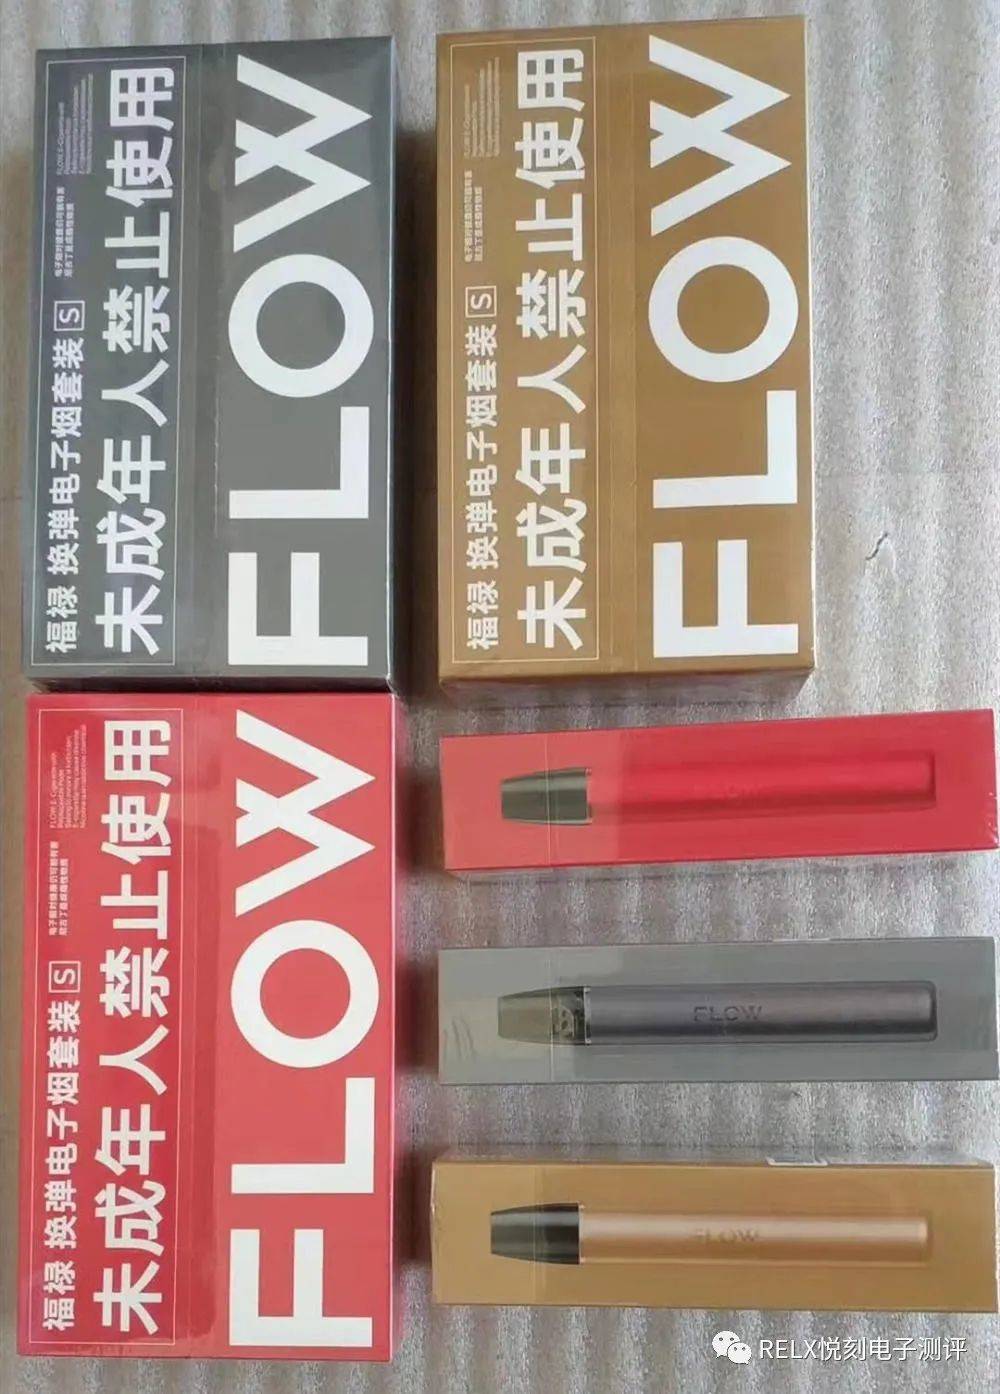 FLOW福禄电子烟多少钱？电量是多少？烟弹口味有哪些好抽的口味？